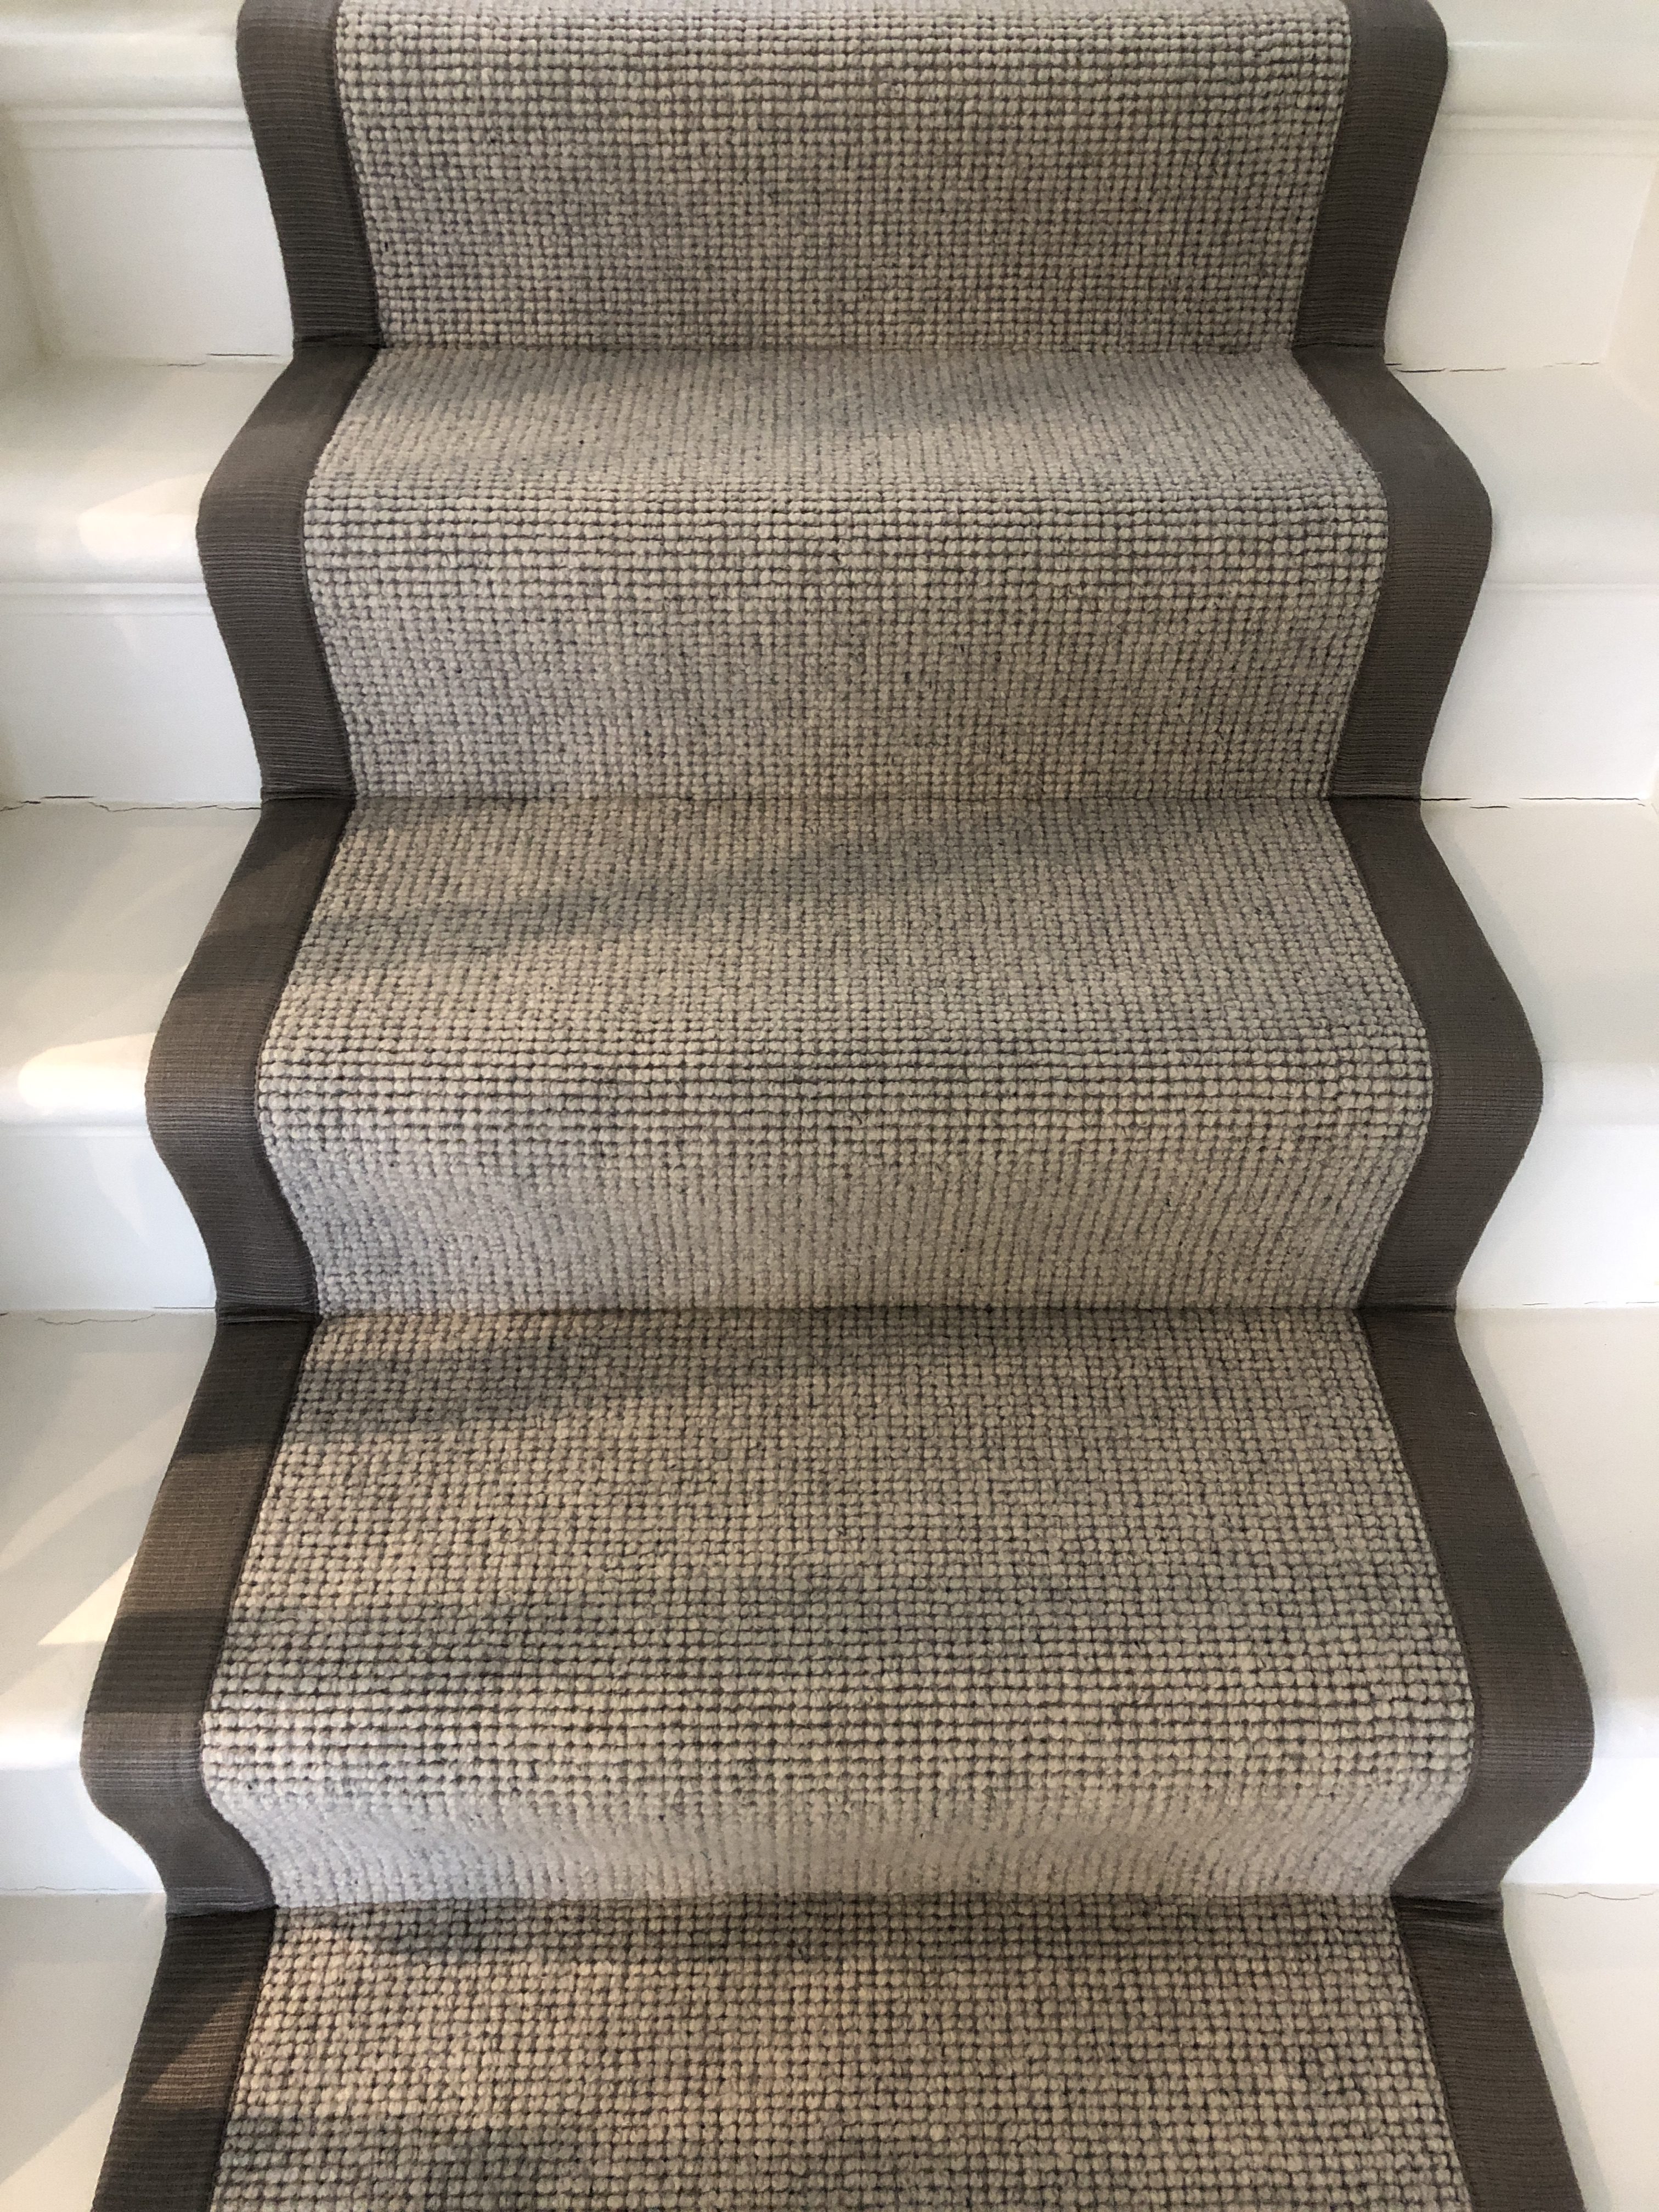 Very Long Dark Grey Stair Runner For Stairway Hard Wearing Loop Pile Carpet Rugs 